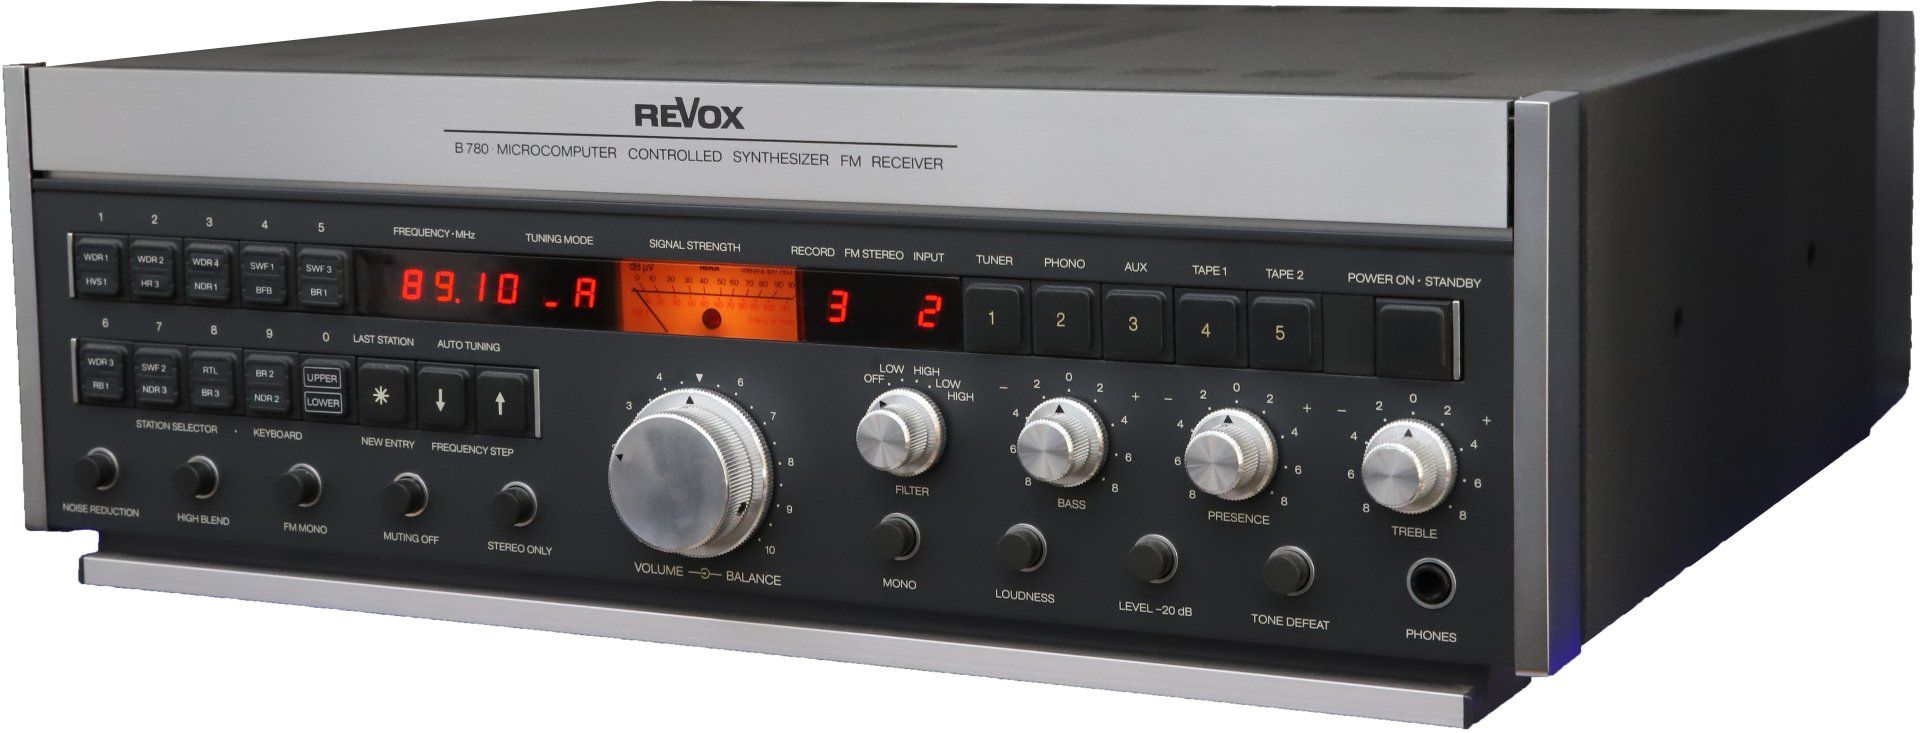 Revox B780 FM Receiver revox-Online